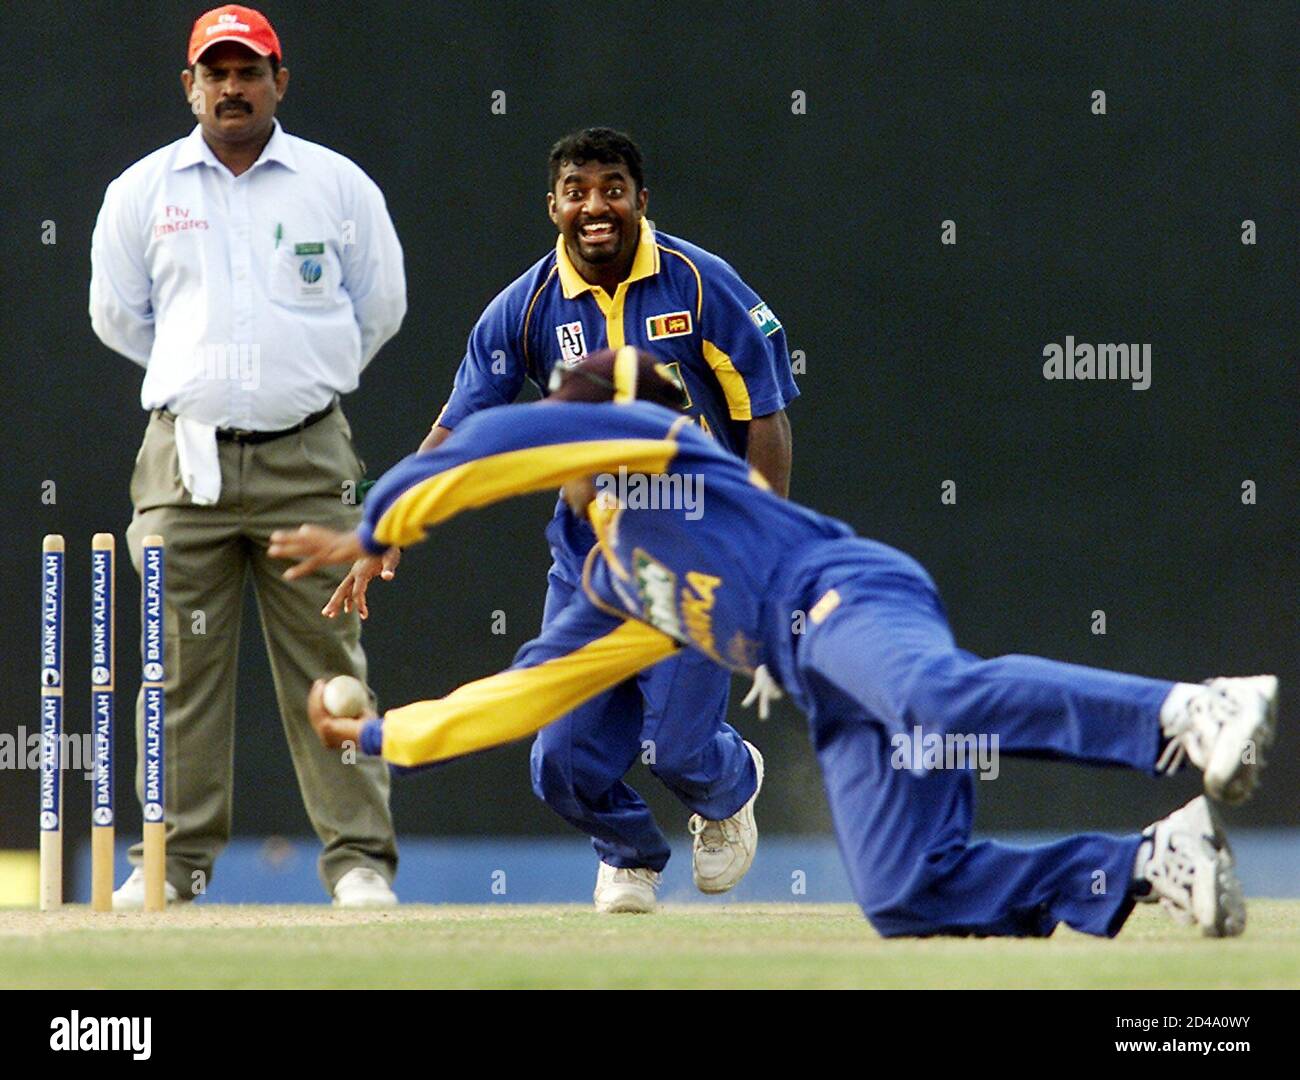 Mahèle Jayawardene (R), le fianteur sri lankais, prend une prise réussie contre le batteur pakistanais Shabbir Ahmed (non illustré) en tant que chauve-souris Muttiah Muralitharan (C) et juge-arbitre T.H. Wijewardena regarde pendant leur tournoi de cricket triangulaire d'une journée à Dambulla, Sri Lanka, le 18 mai 2003. Le Sri Lanka a battu le Pakistan par 12 tours. REUTERS/Anurudha Lokuhapuarachchi AL/DL Banque D'Images